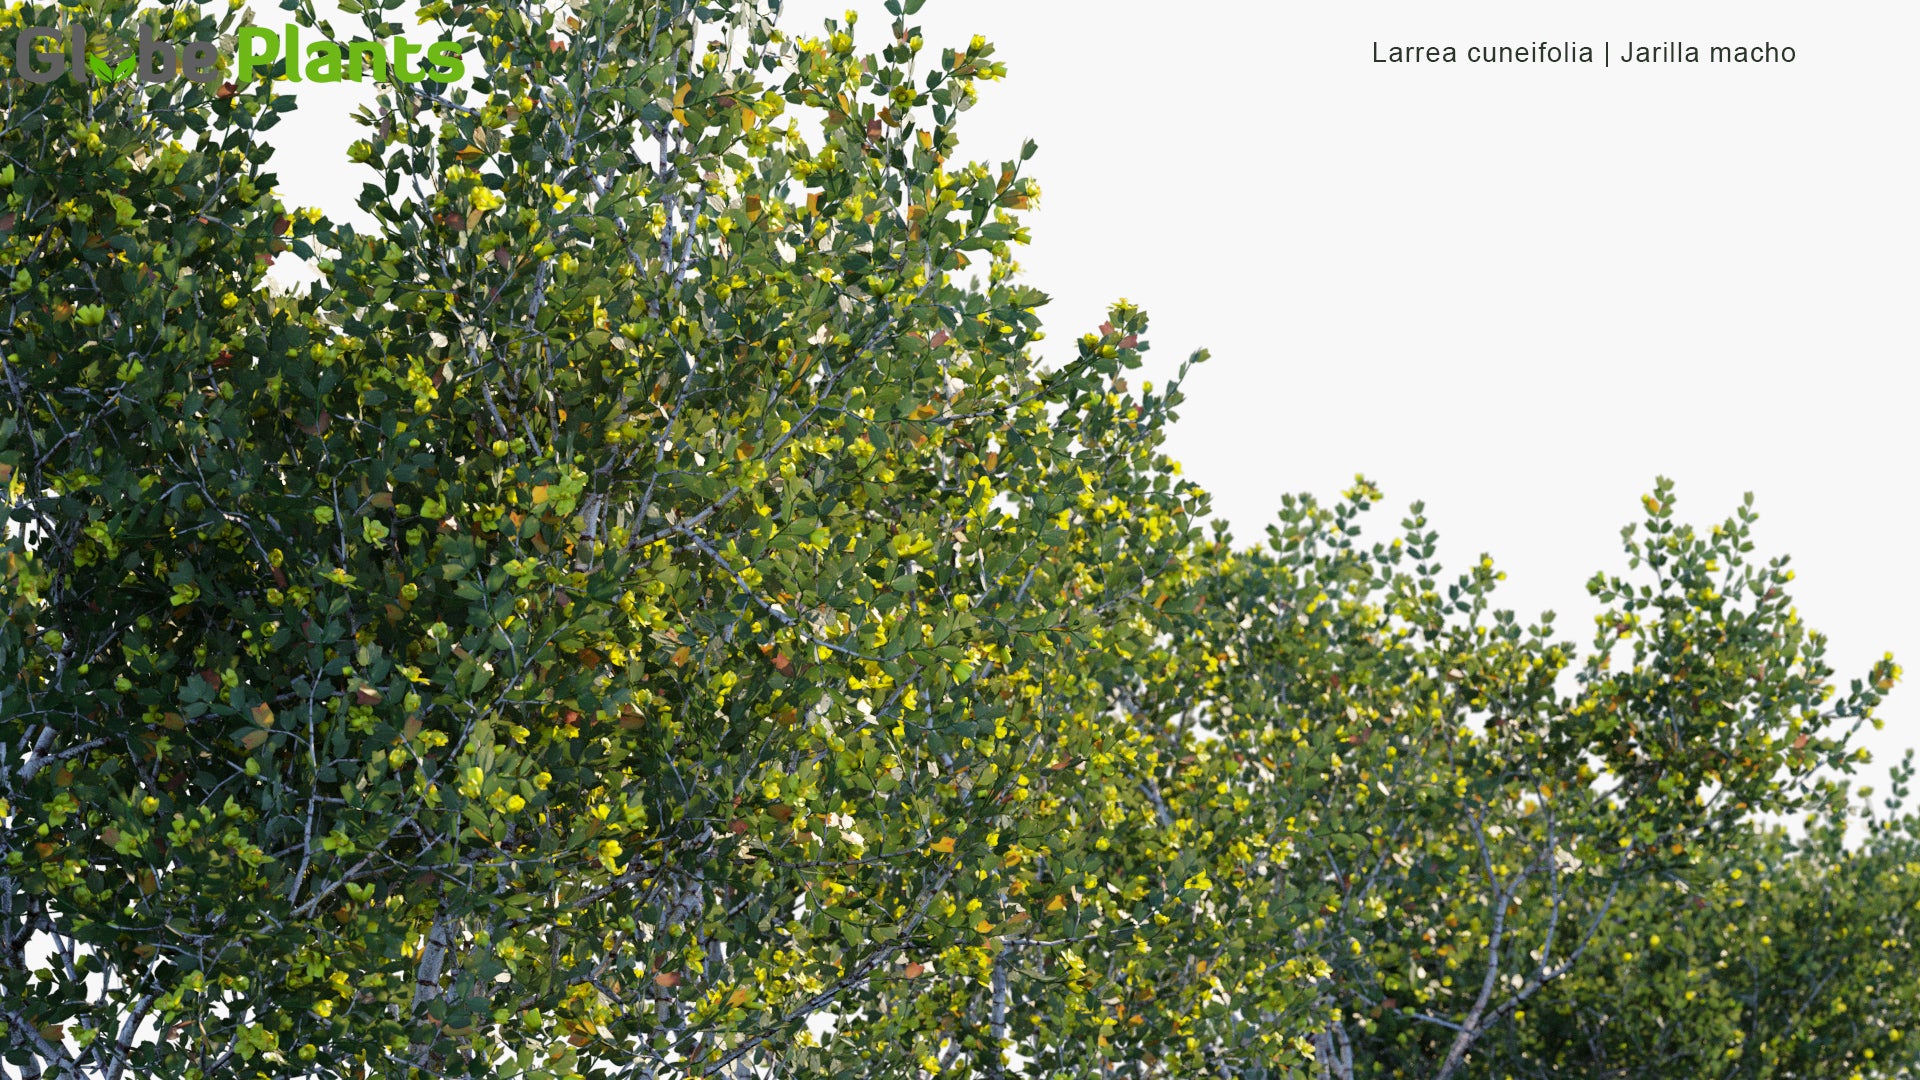 Larrea Cuneifolia - Jarilla Macho